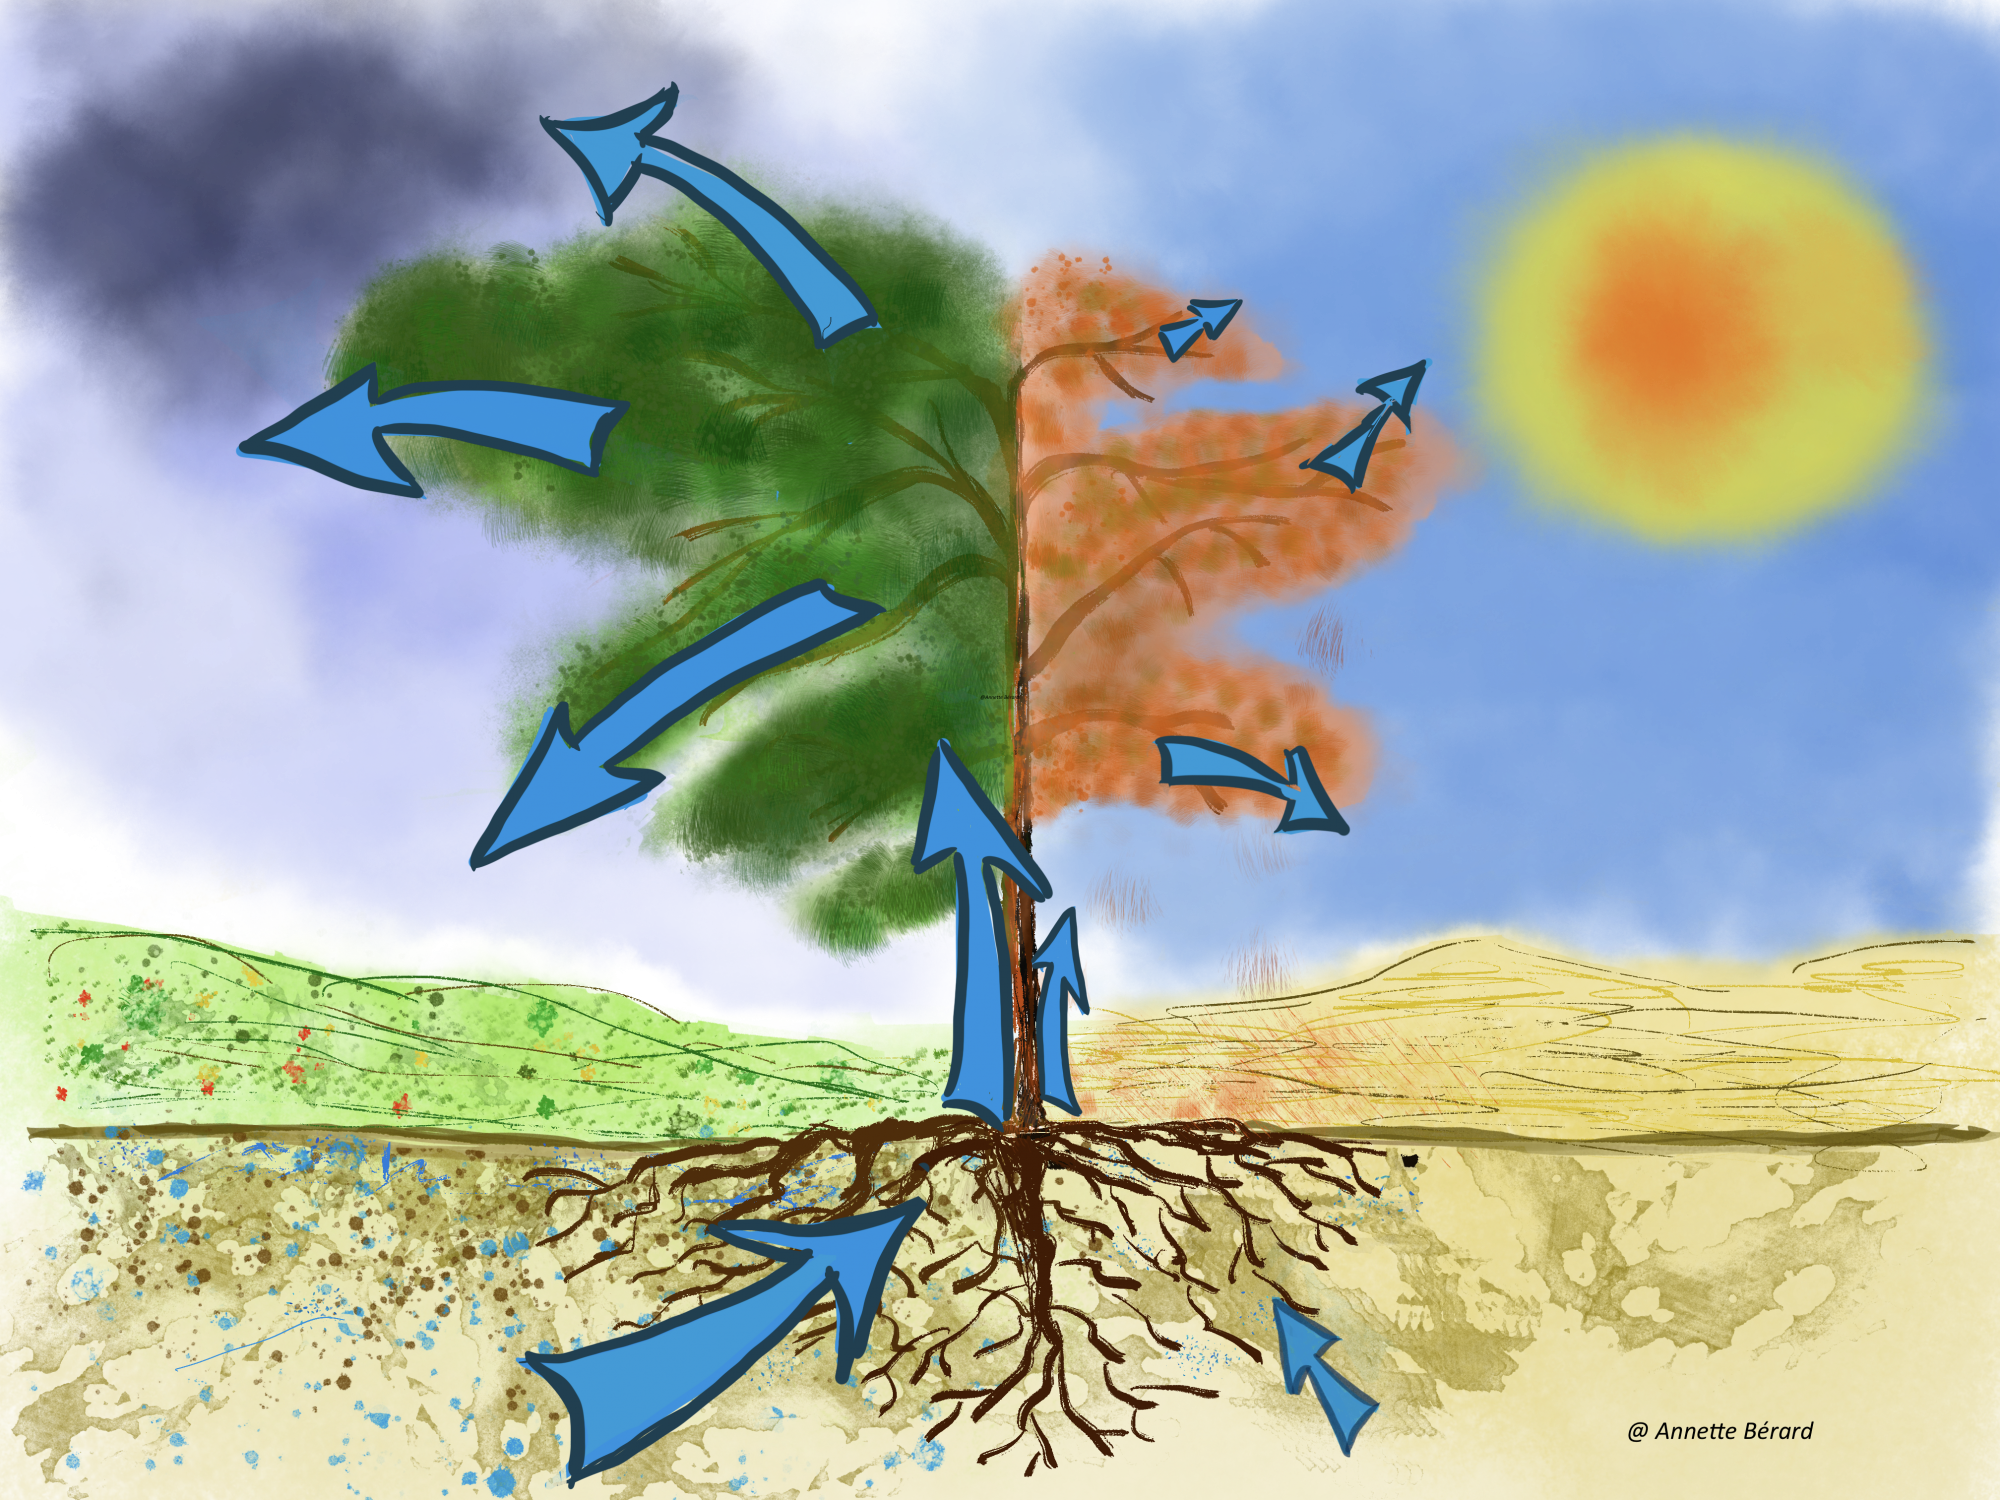 Dessin pour illustrer l'impact du changement climatique sur un arbre